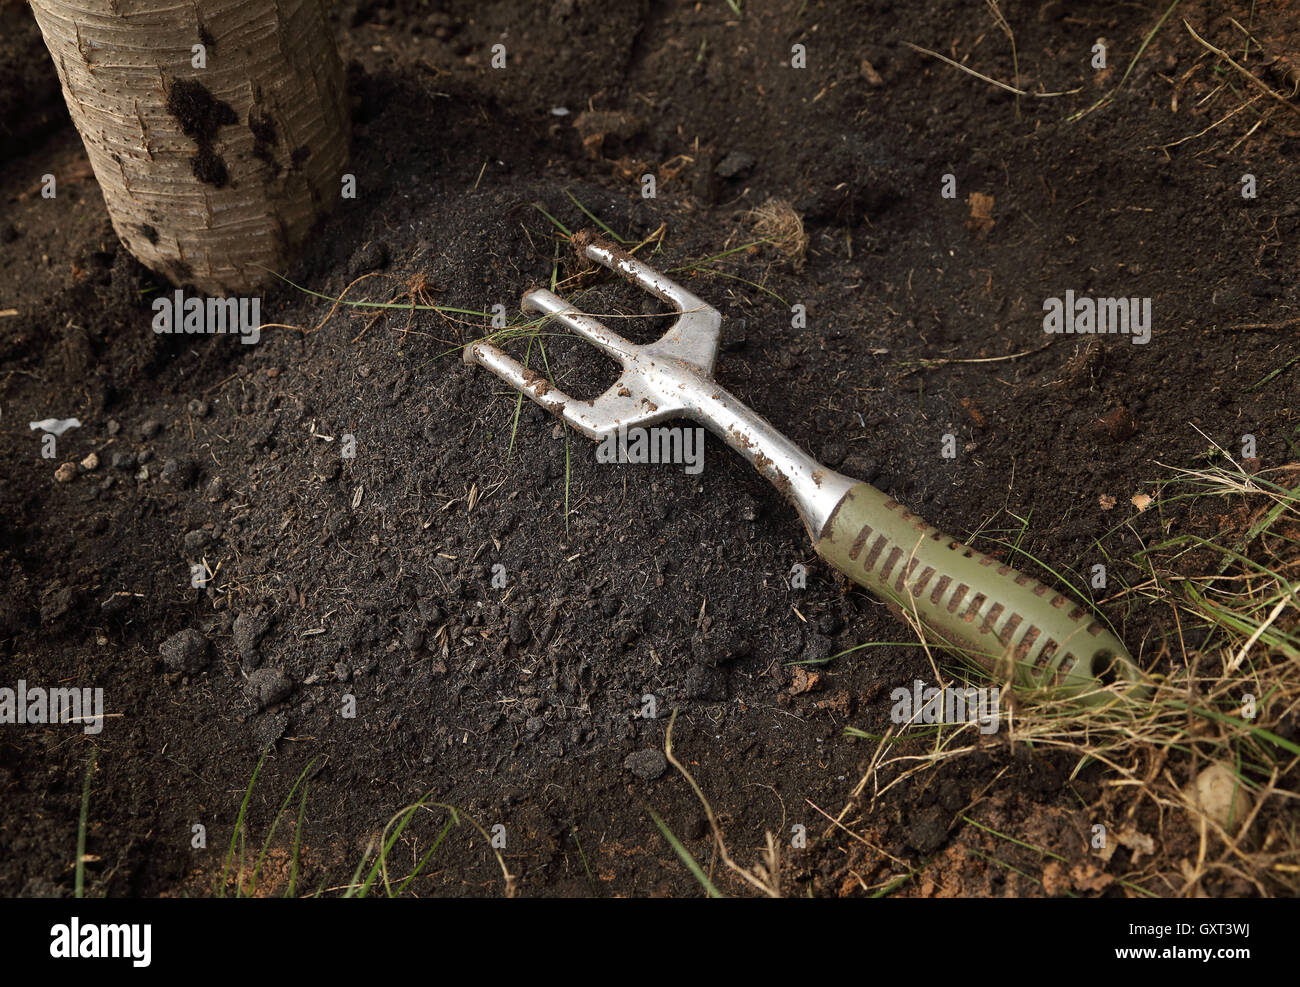 small gardening fork on soil Stock Photo